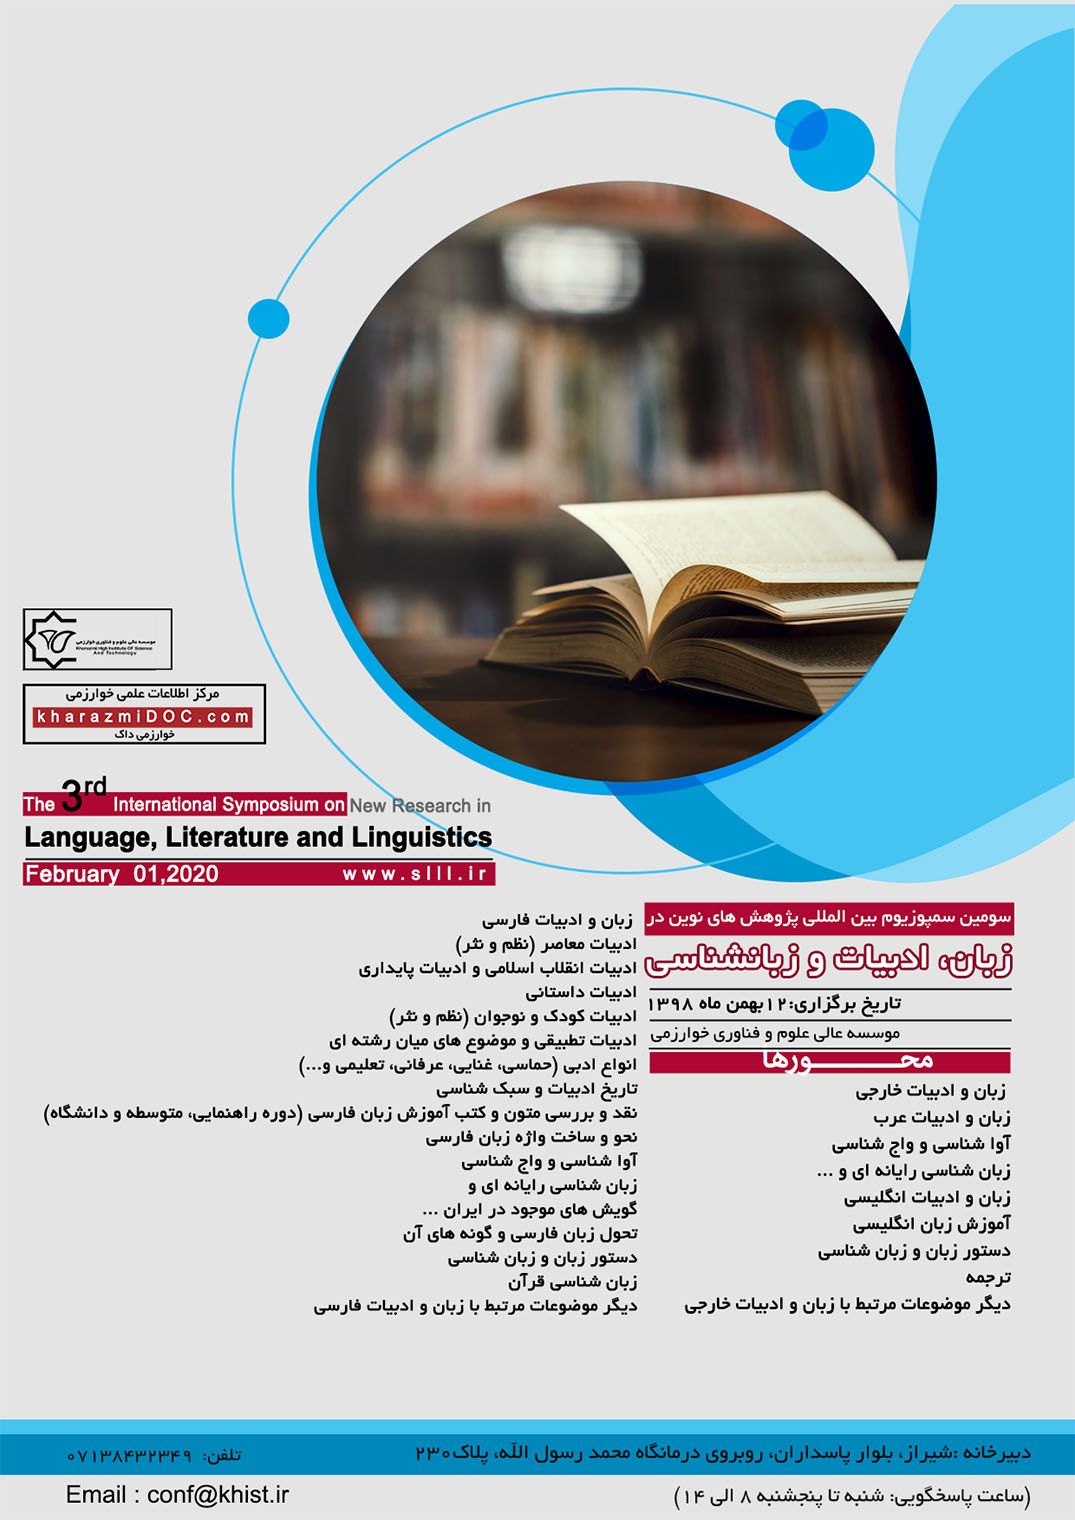 پوستر سومین سمپوزیوم بین المللی پژوهش های نوین در زبان، ادبیات و زبانشناسی